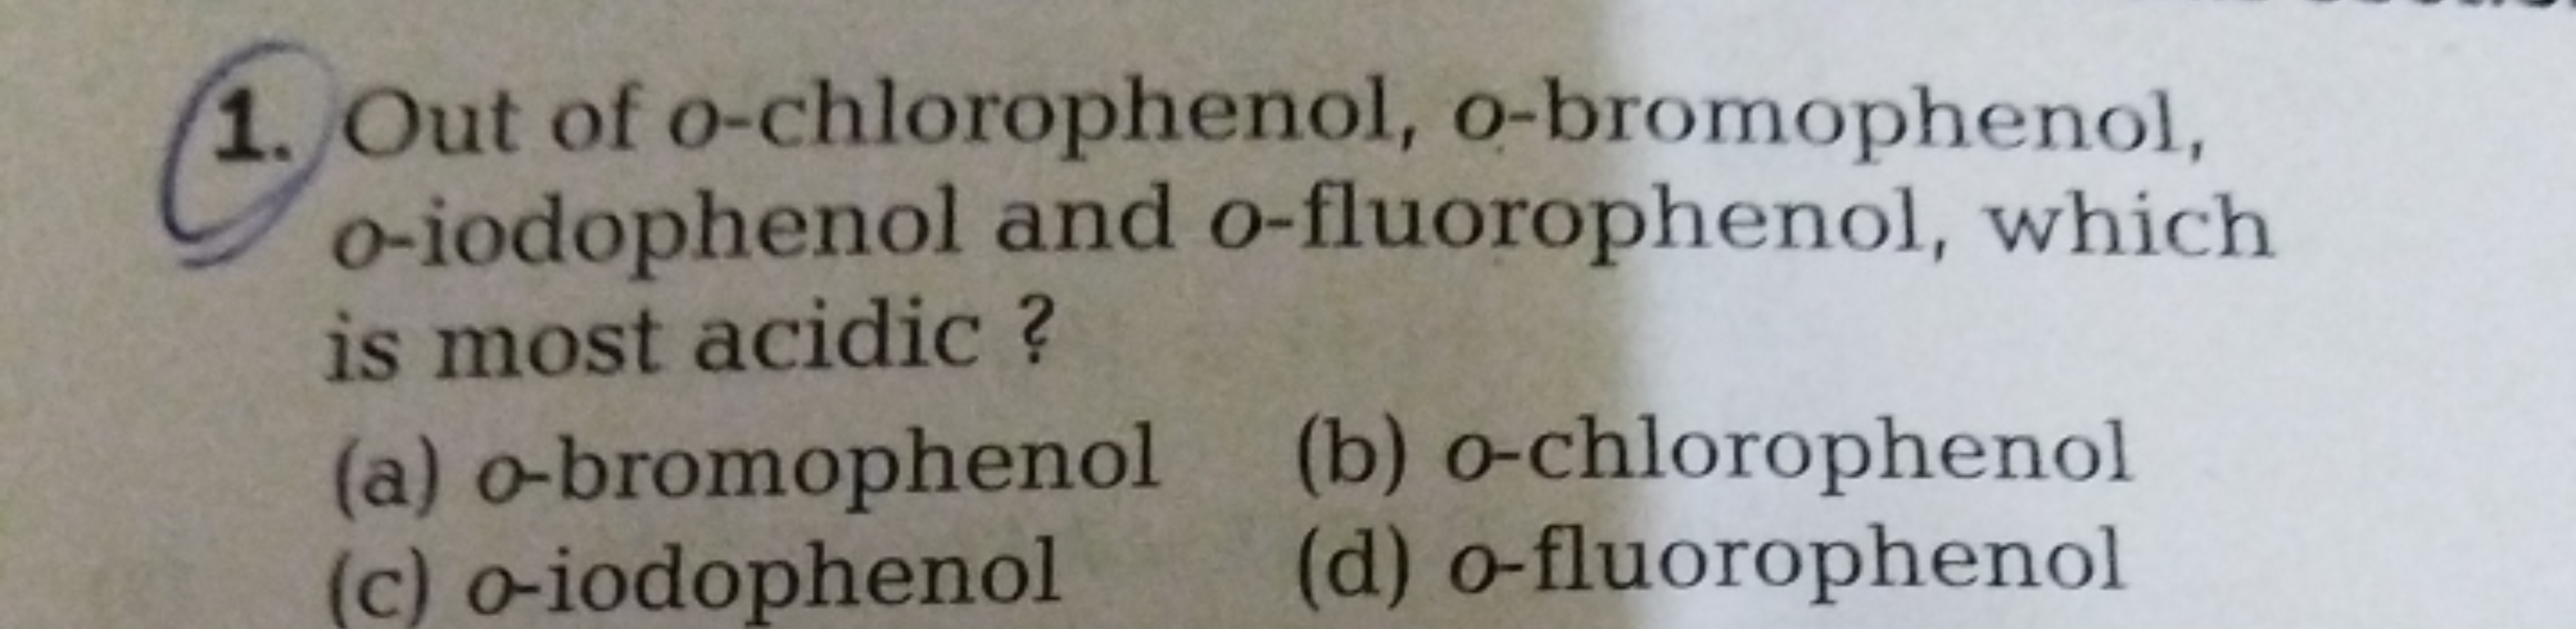 Out of o-chlorophenol, o-bromophenol, o-iodophenol and o-fluorophenol,